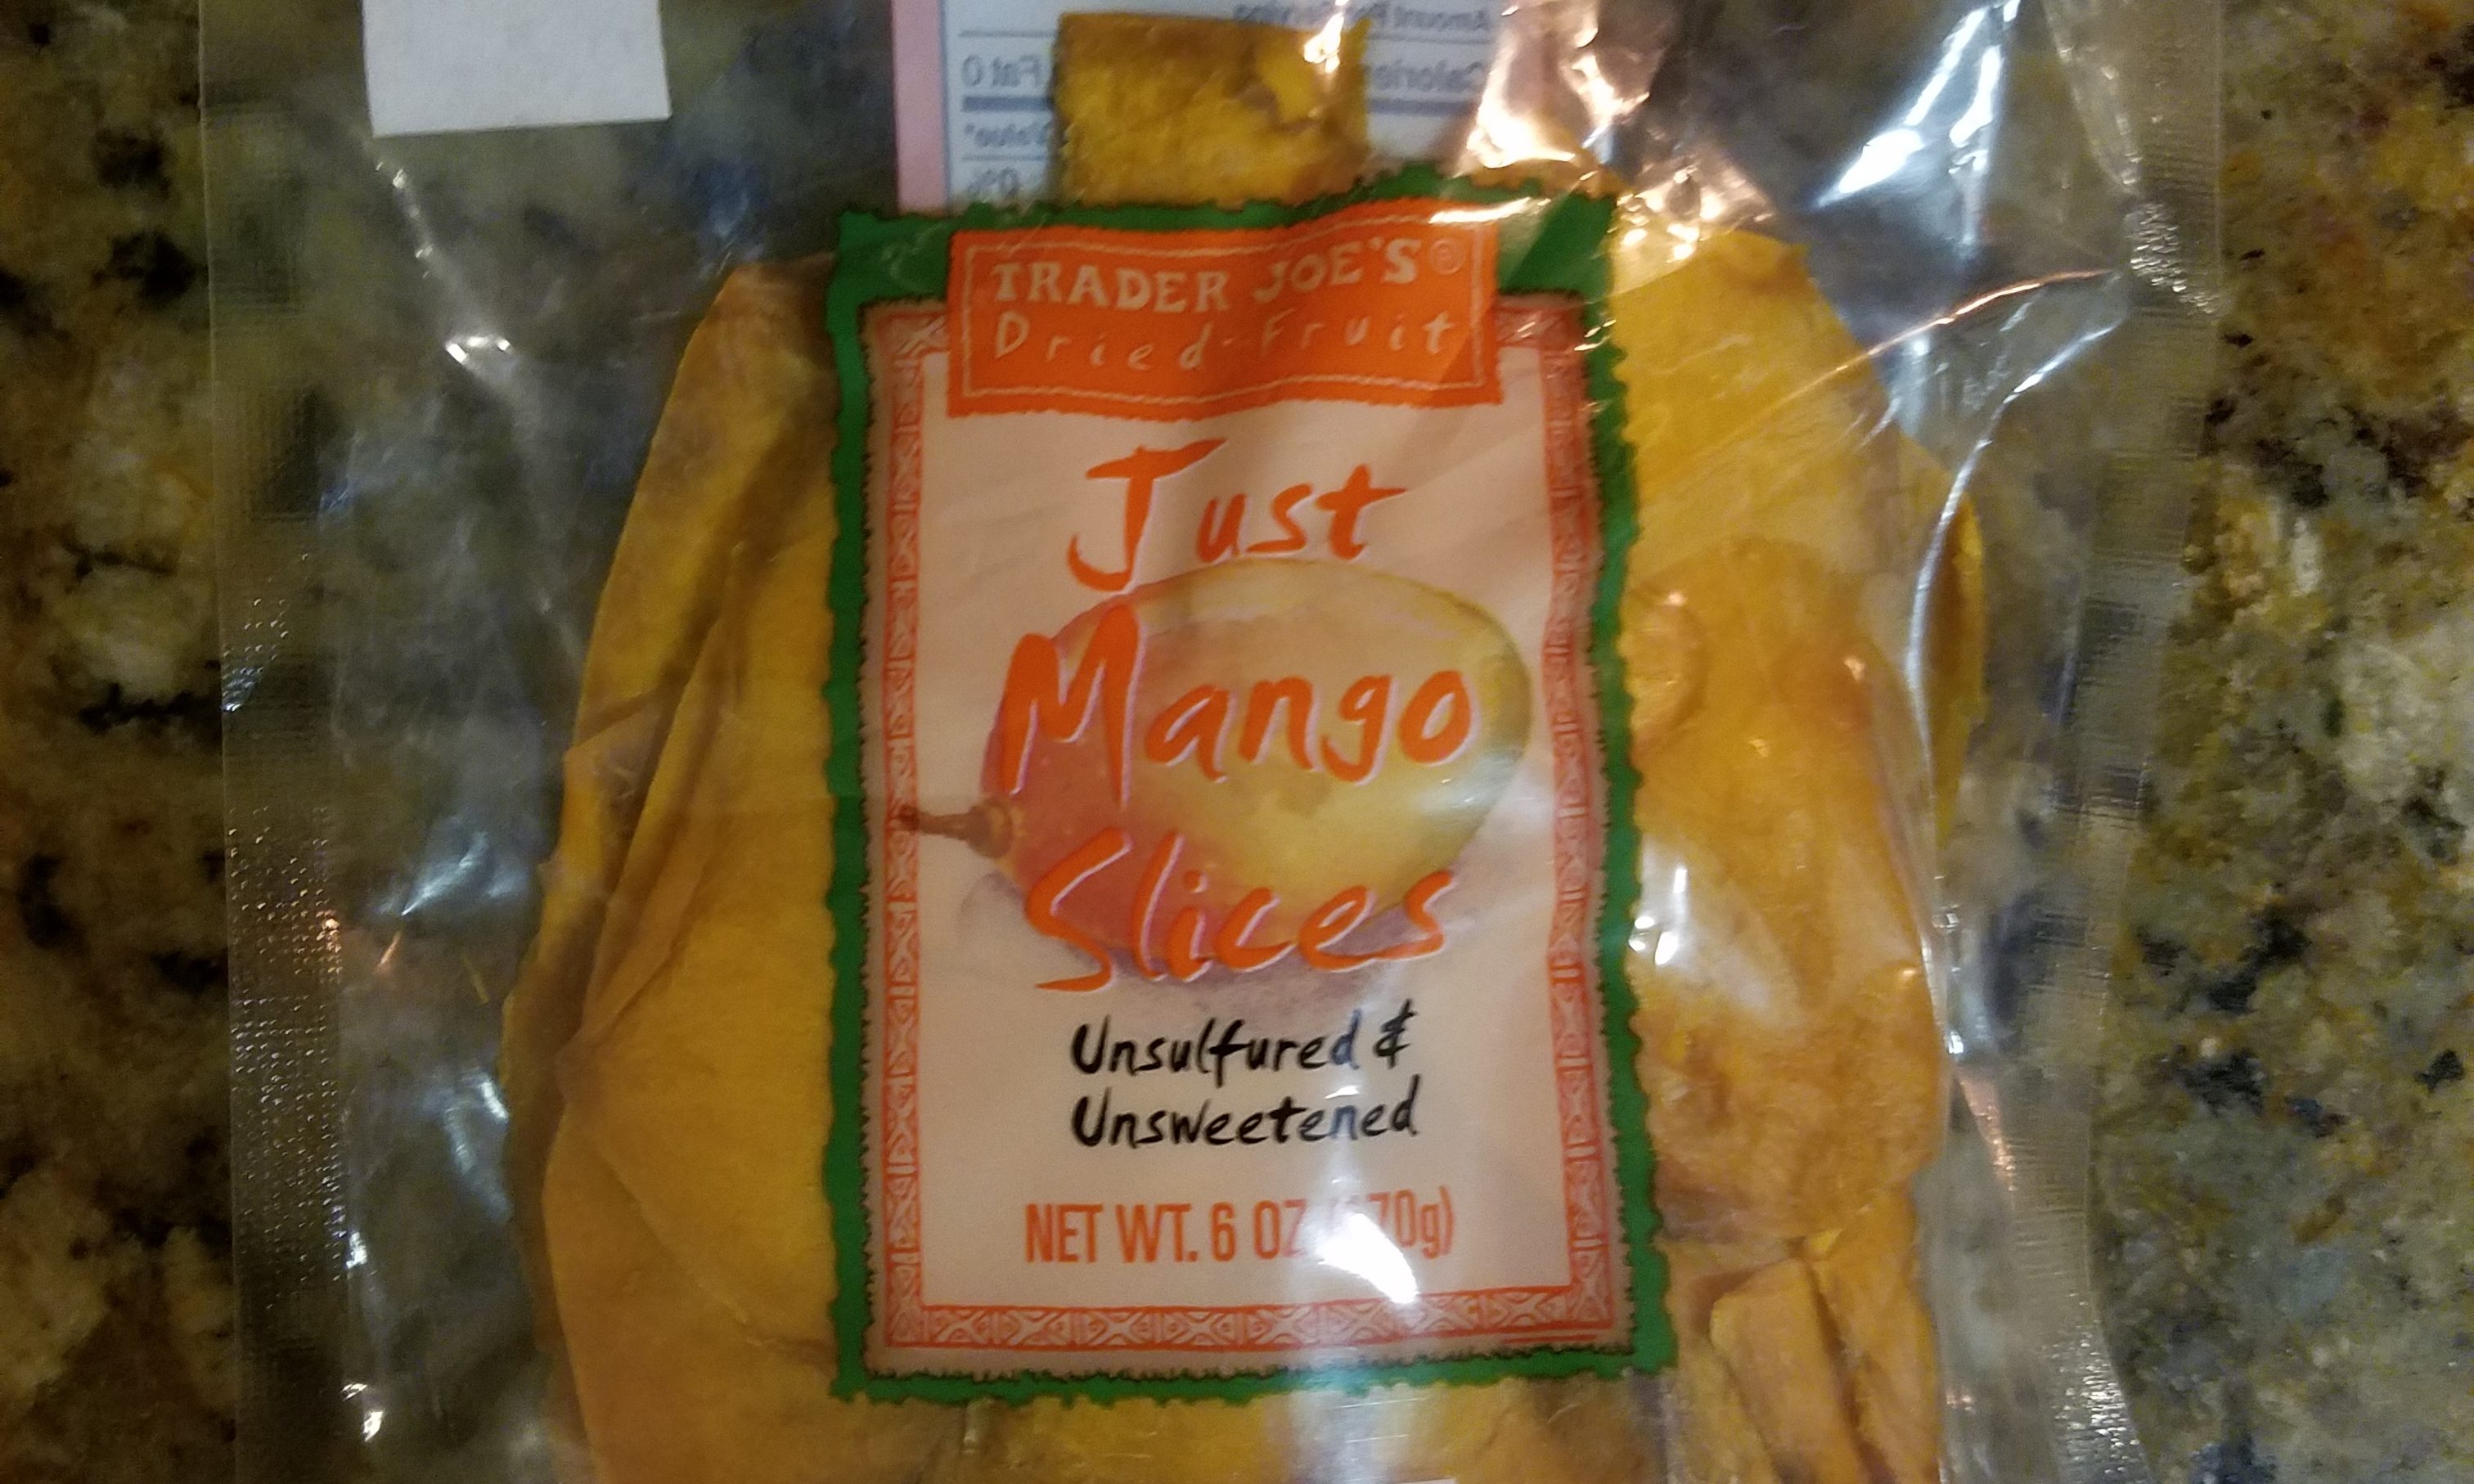 Mangos  Trader Joe's